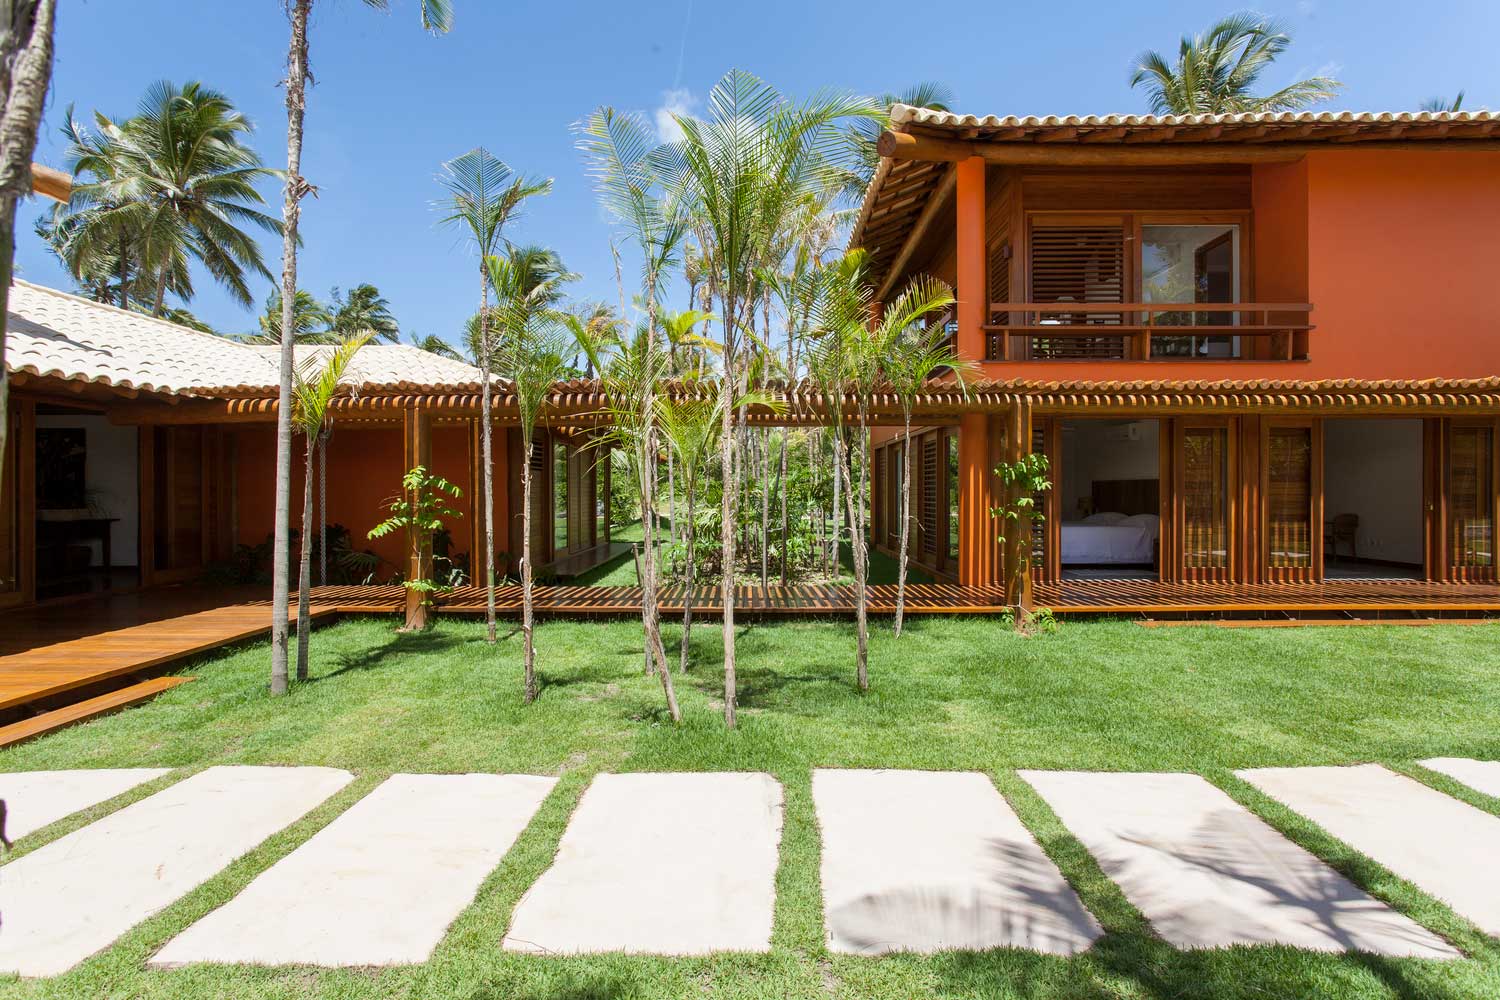 roberto-migotto-casa-de-praia-1 Casas de luxo contemporâneas: conheça as mais lindas feitas no Brasil